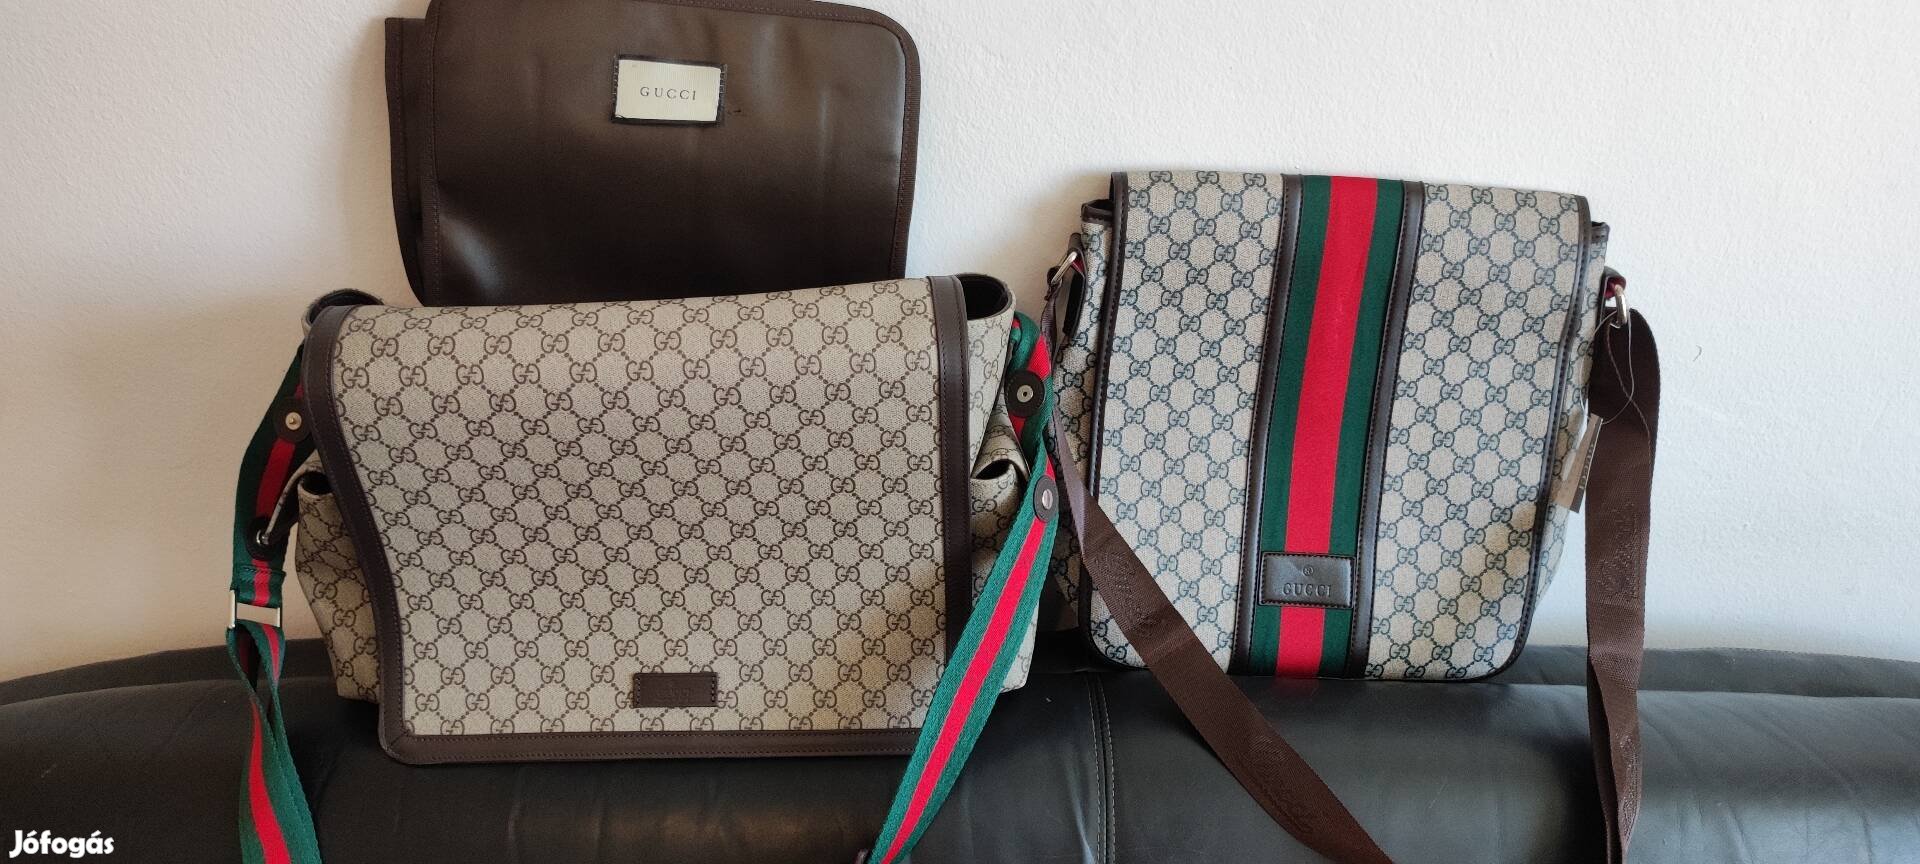 Gucci táska szett olcsón eladó 